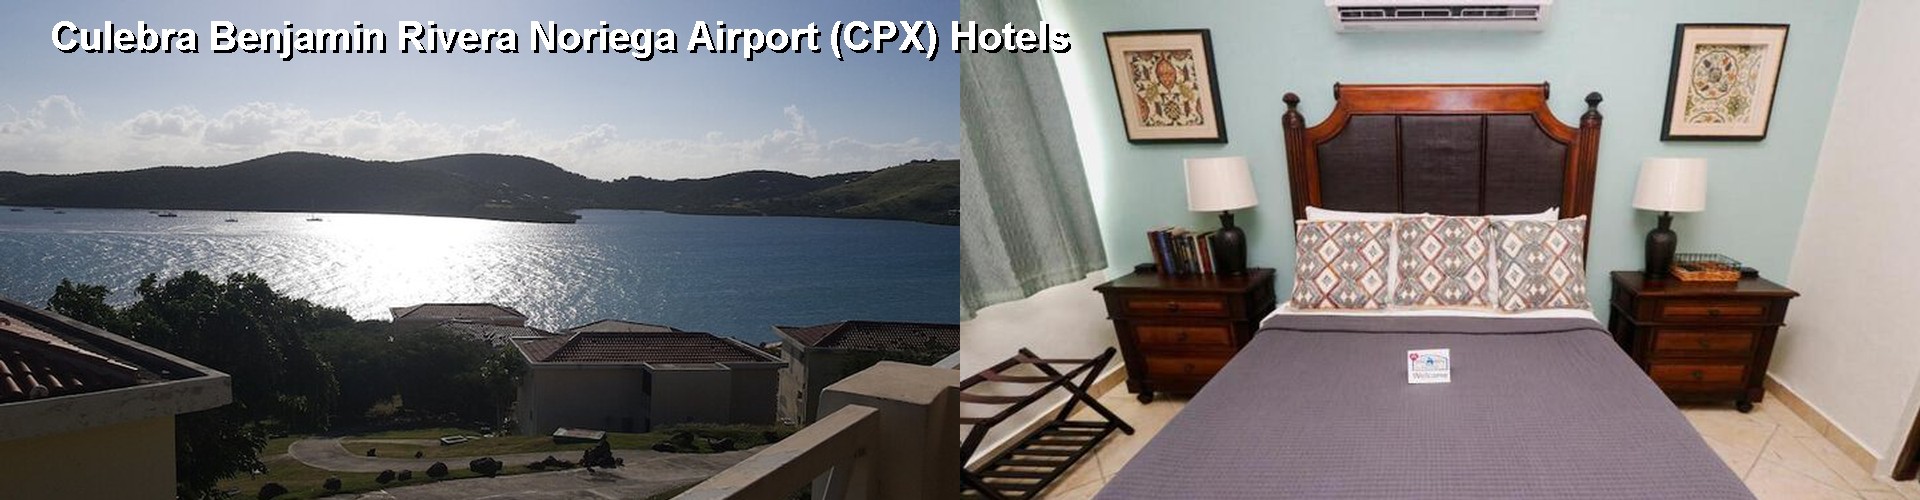 5 Best Hotels near Culebra Benjamin Rivera Noriega Airport (CPX)